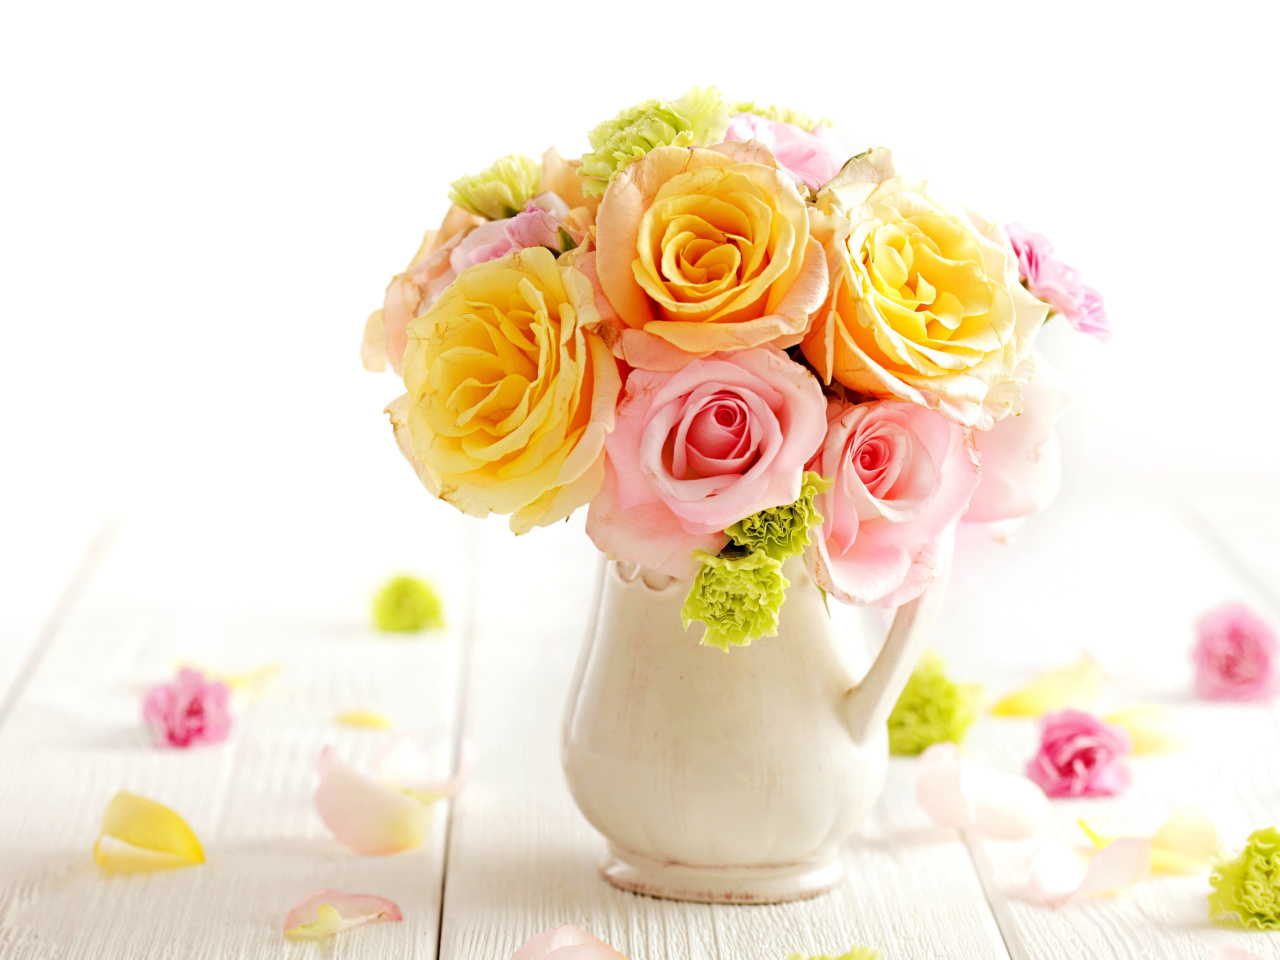 Das Tender Purity Roses Bouquet Wallpaper 1280x960